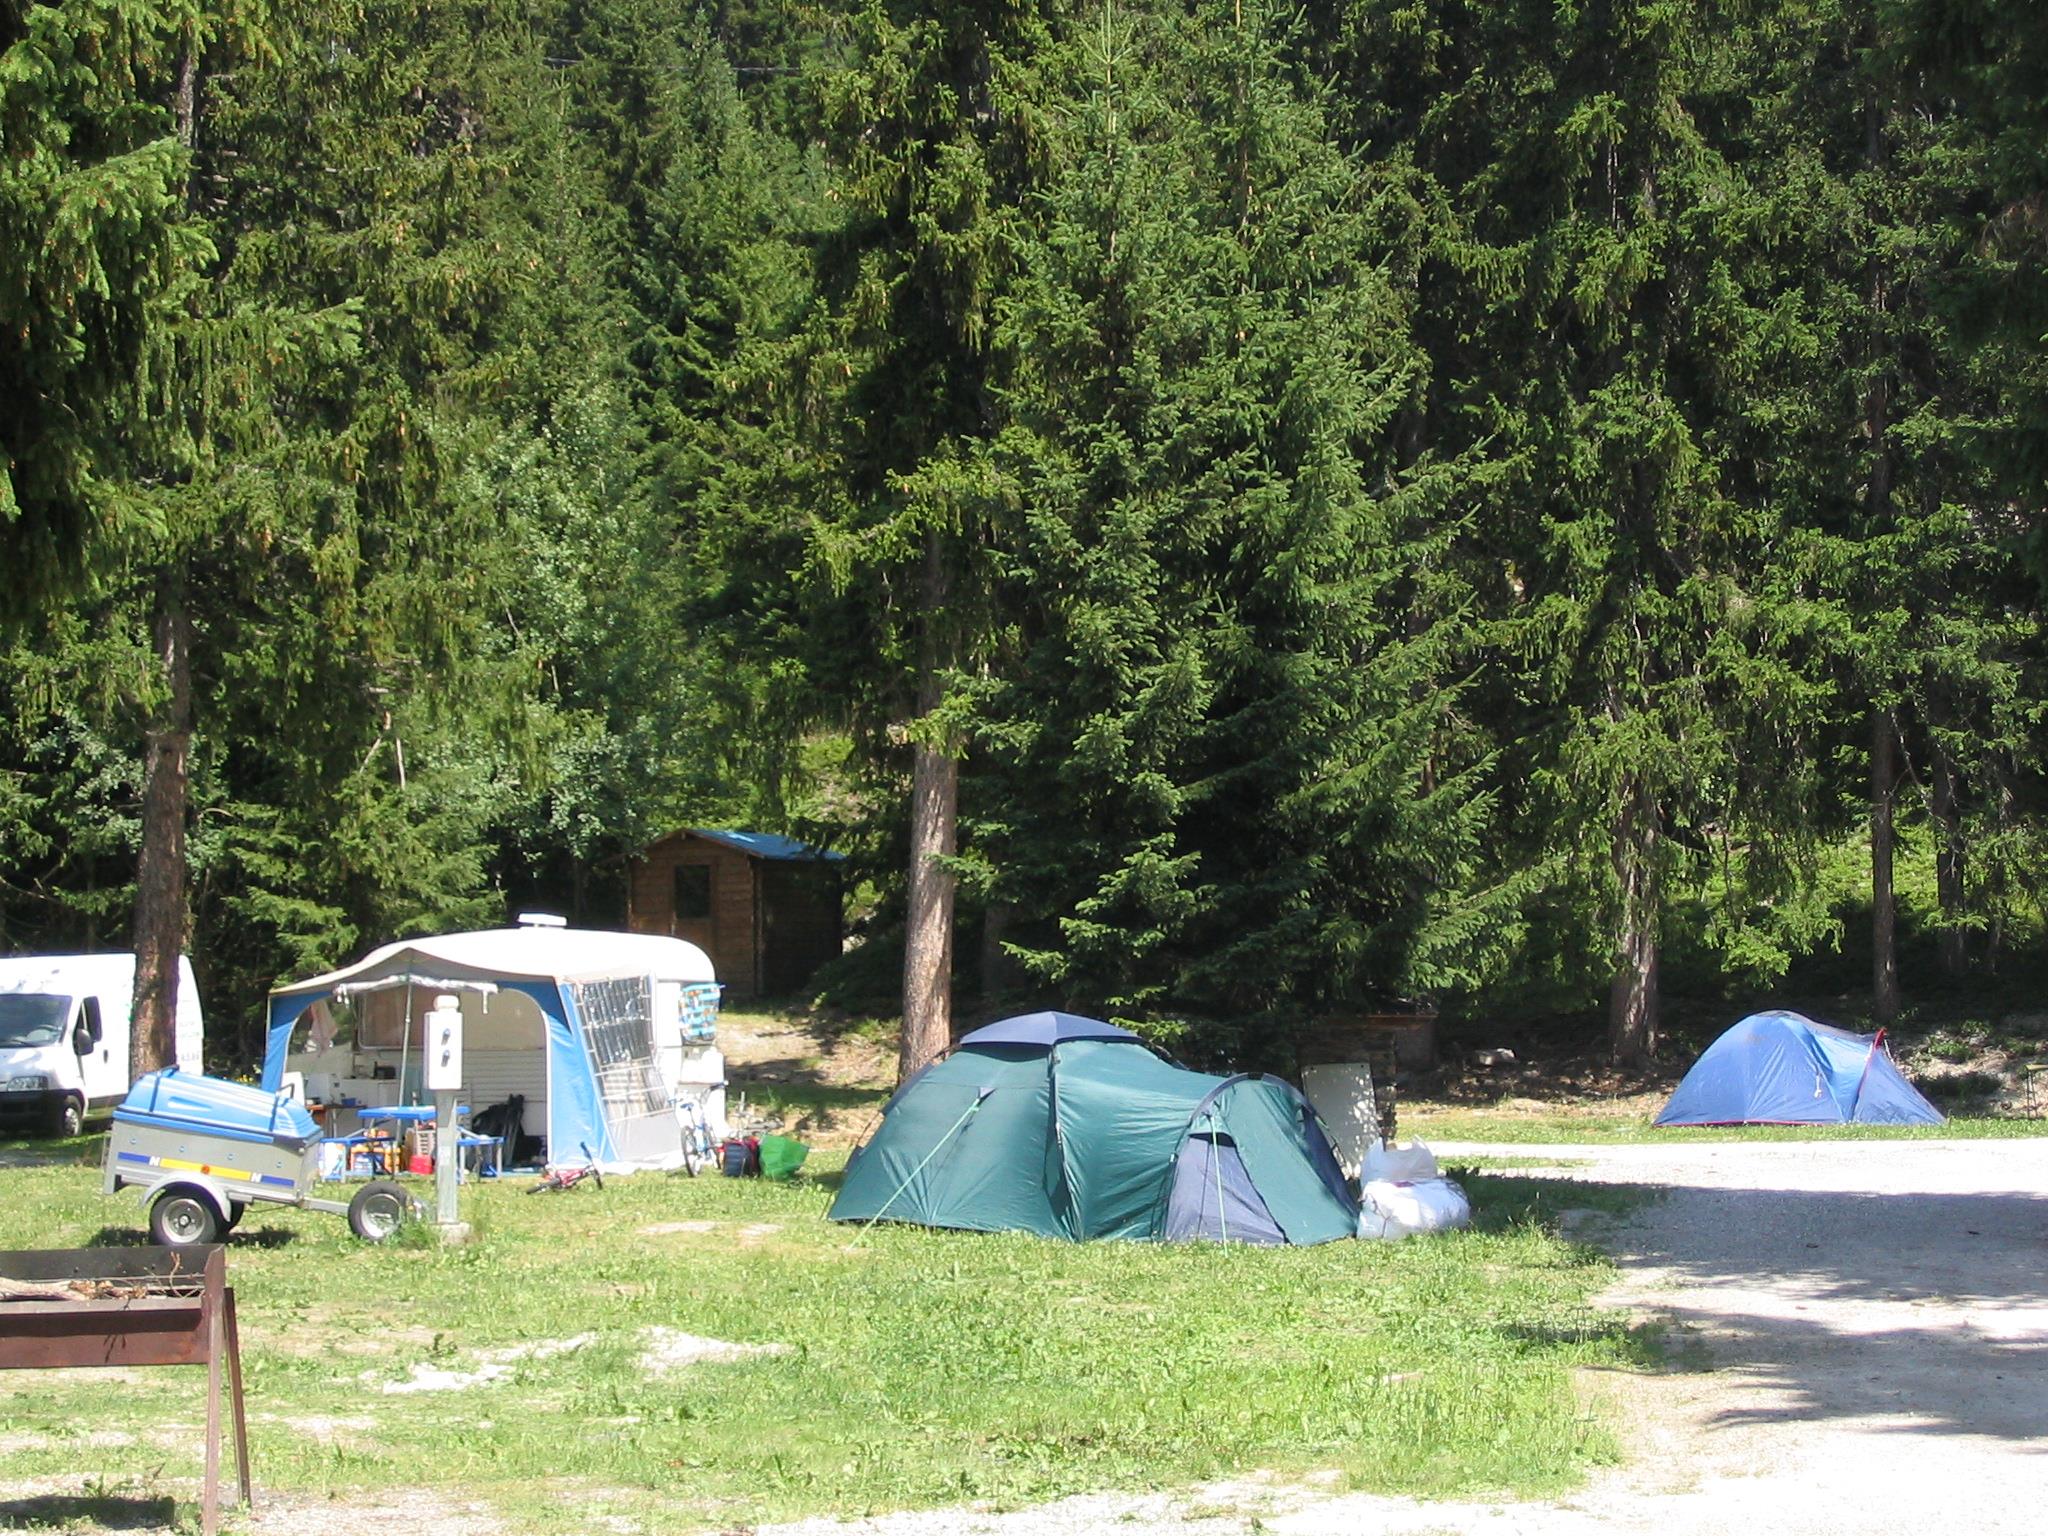 Emplacement - Emplacement Tente, Caravane Ou Camping Car, Électricité En Option - Camping La Forêt